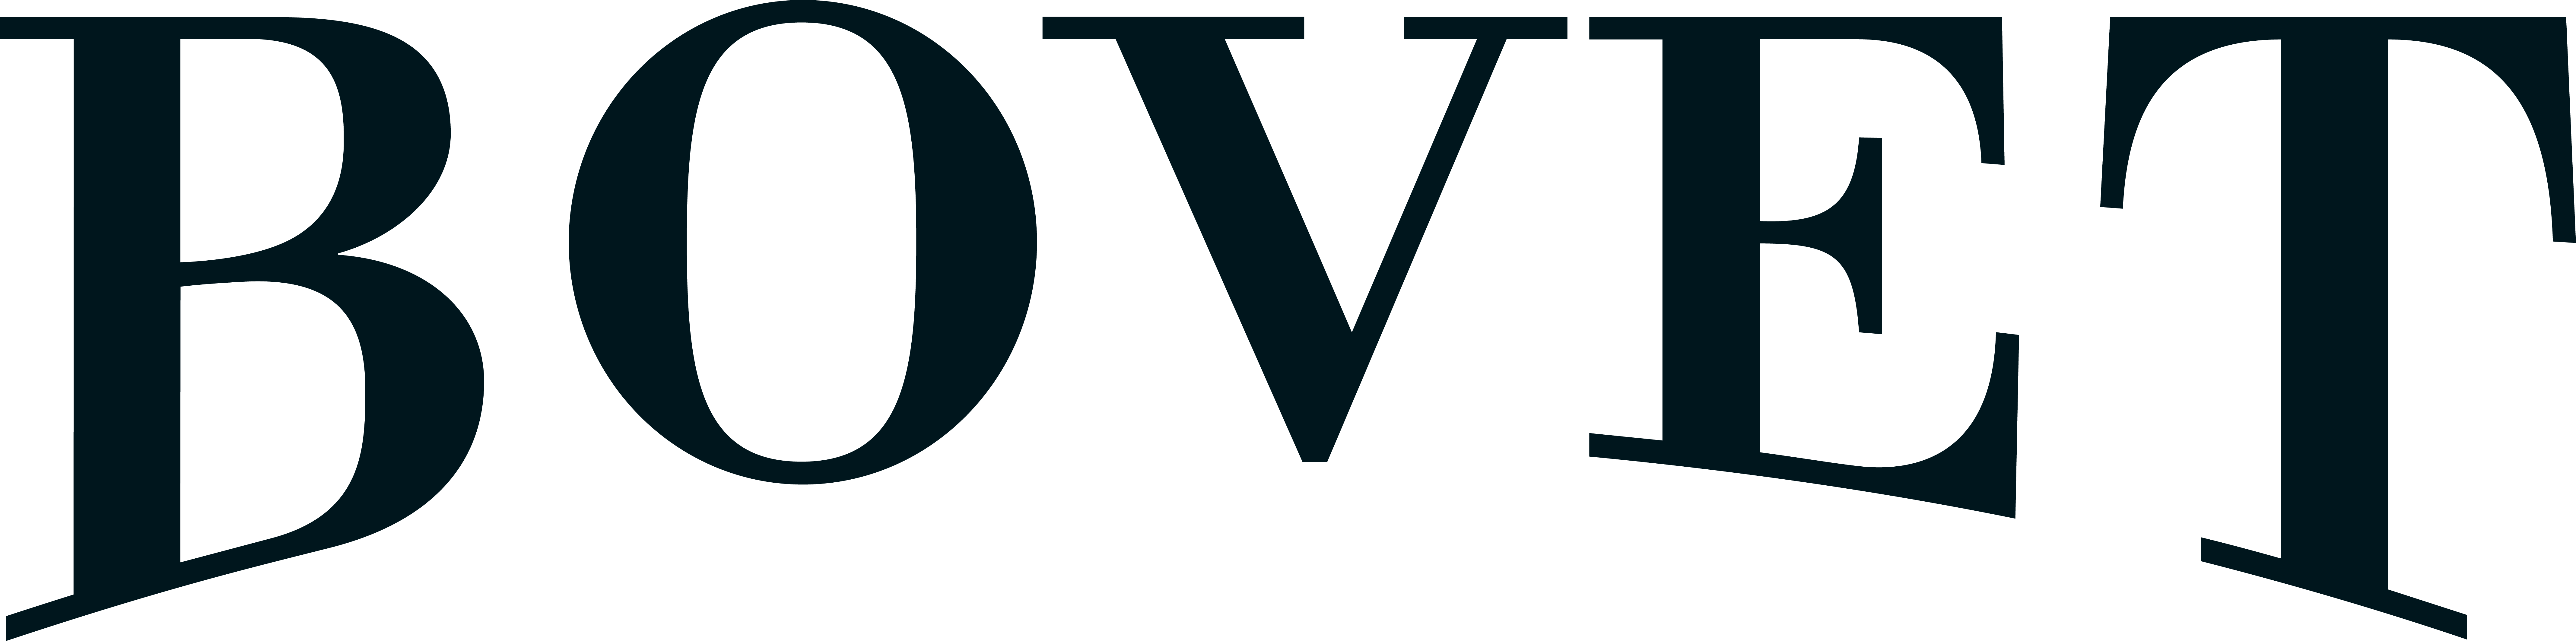 Bovet logo 2023 screen black